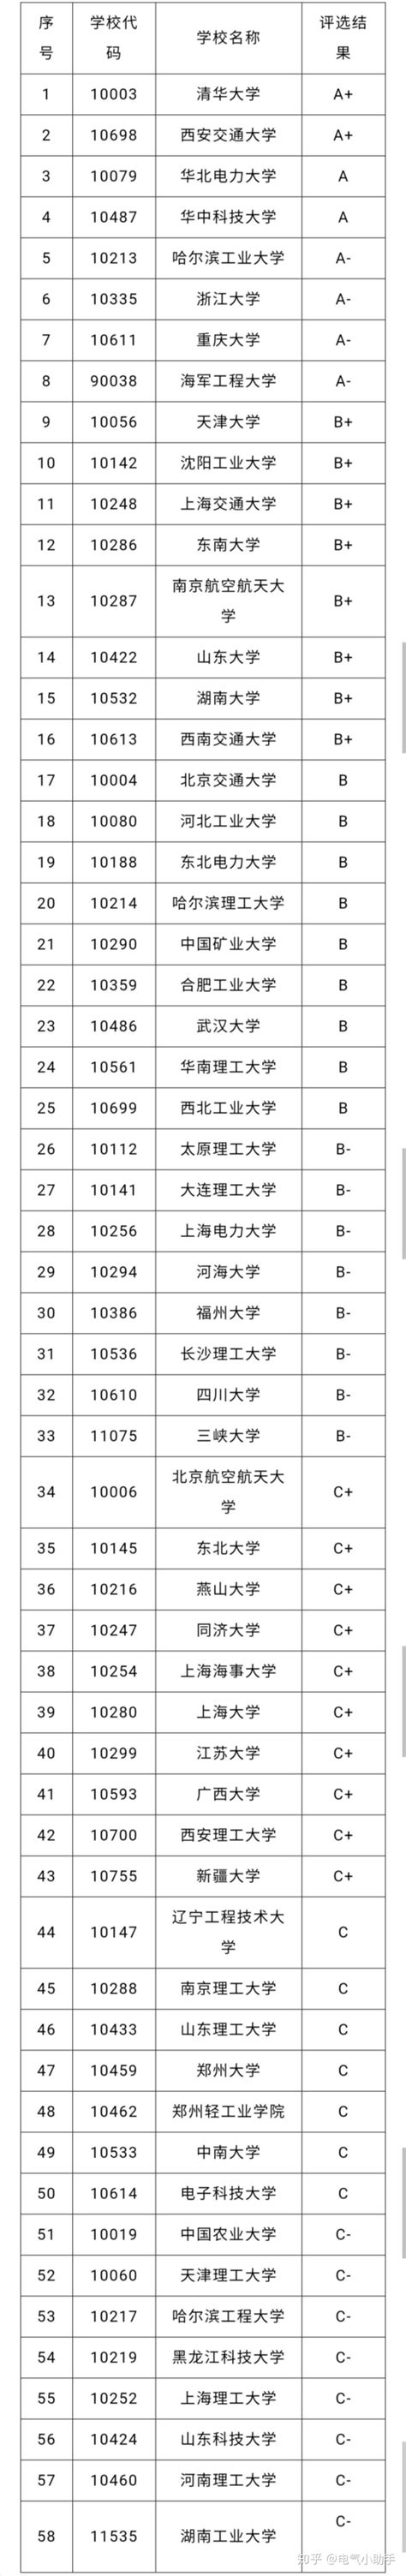 天津市工业和信息化局关于公布2019年度天津市绿色工厂名单的通知-天津排放权交易所有限公司